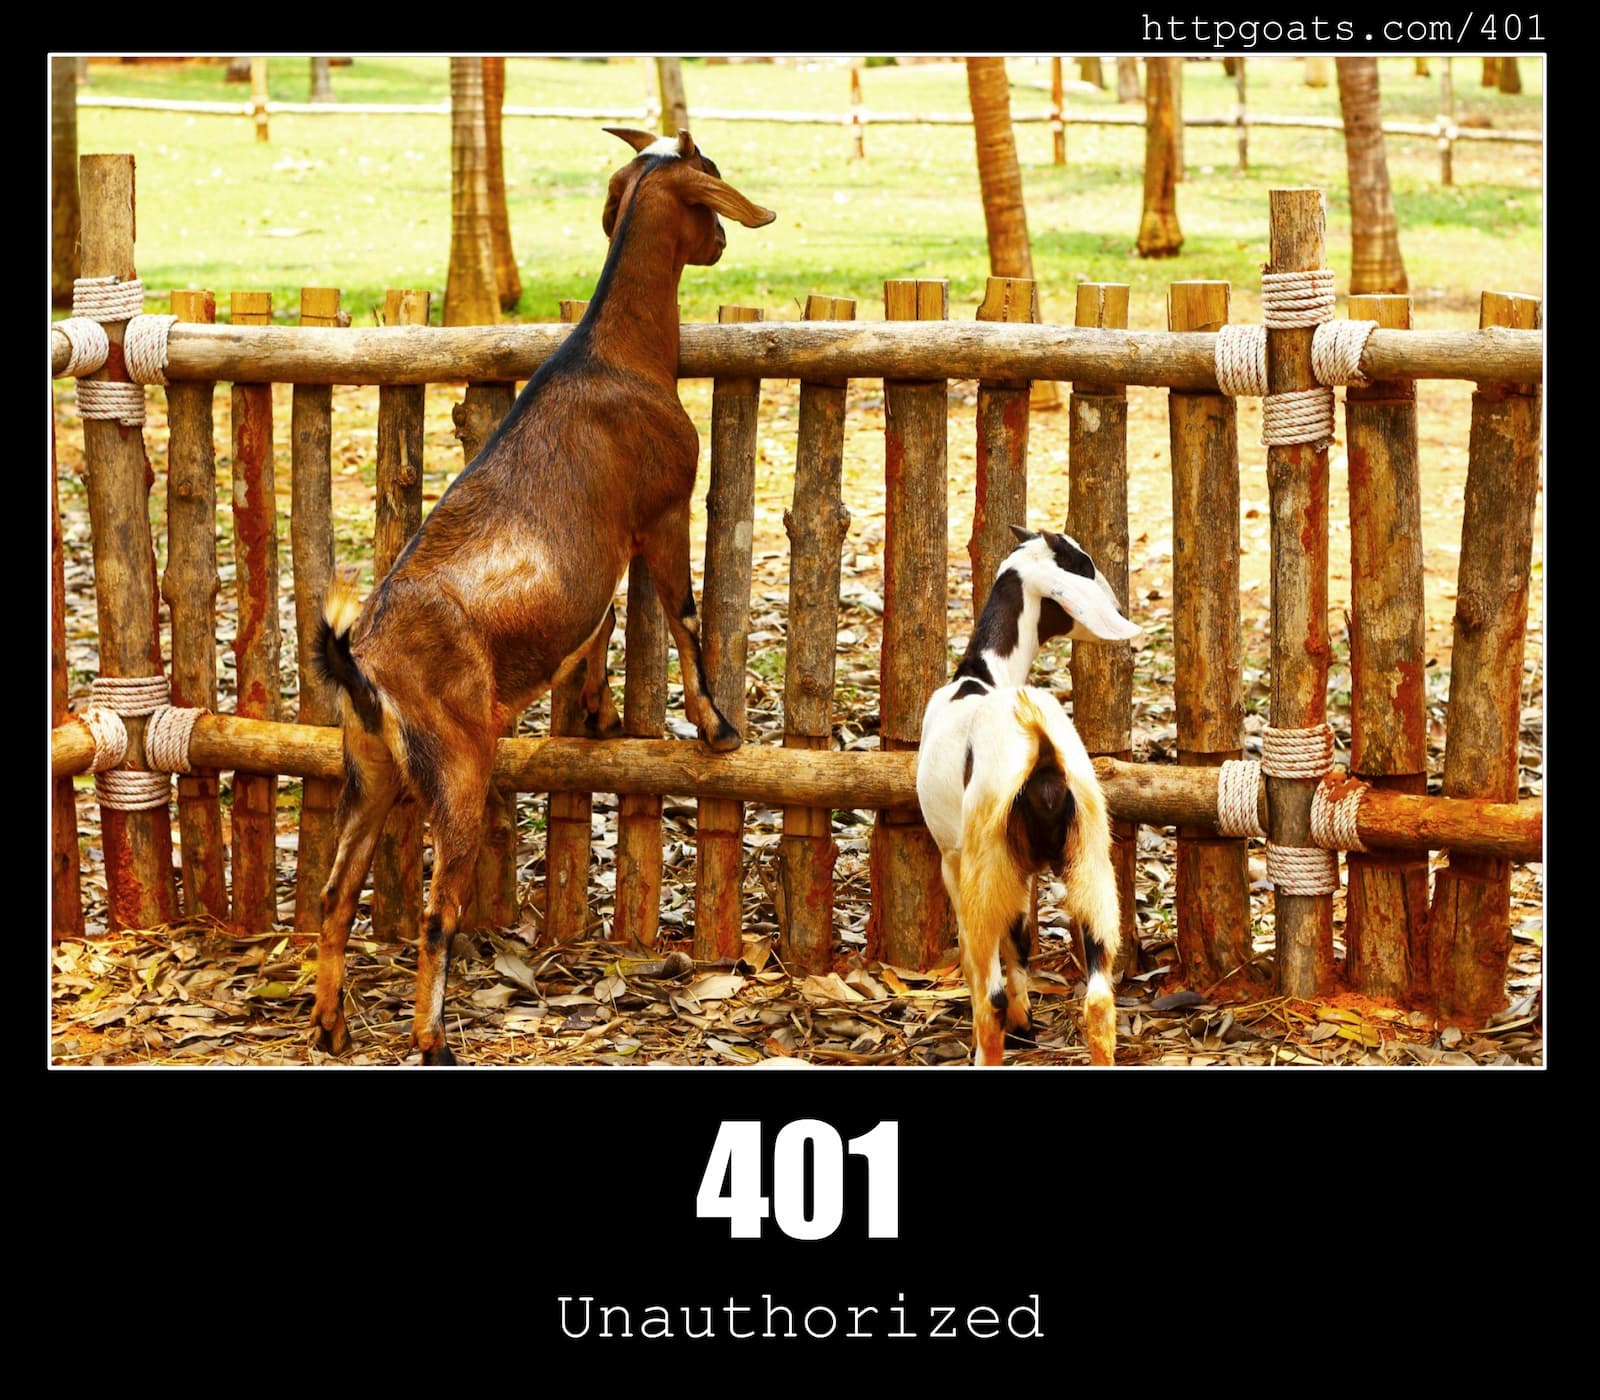 HTTP Status Code 401 Unauthorized & Goats